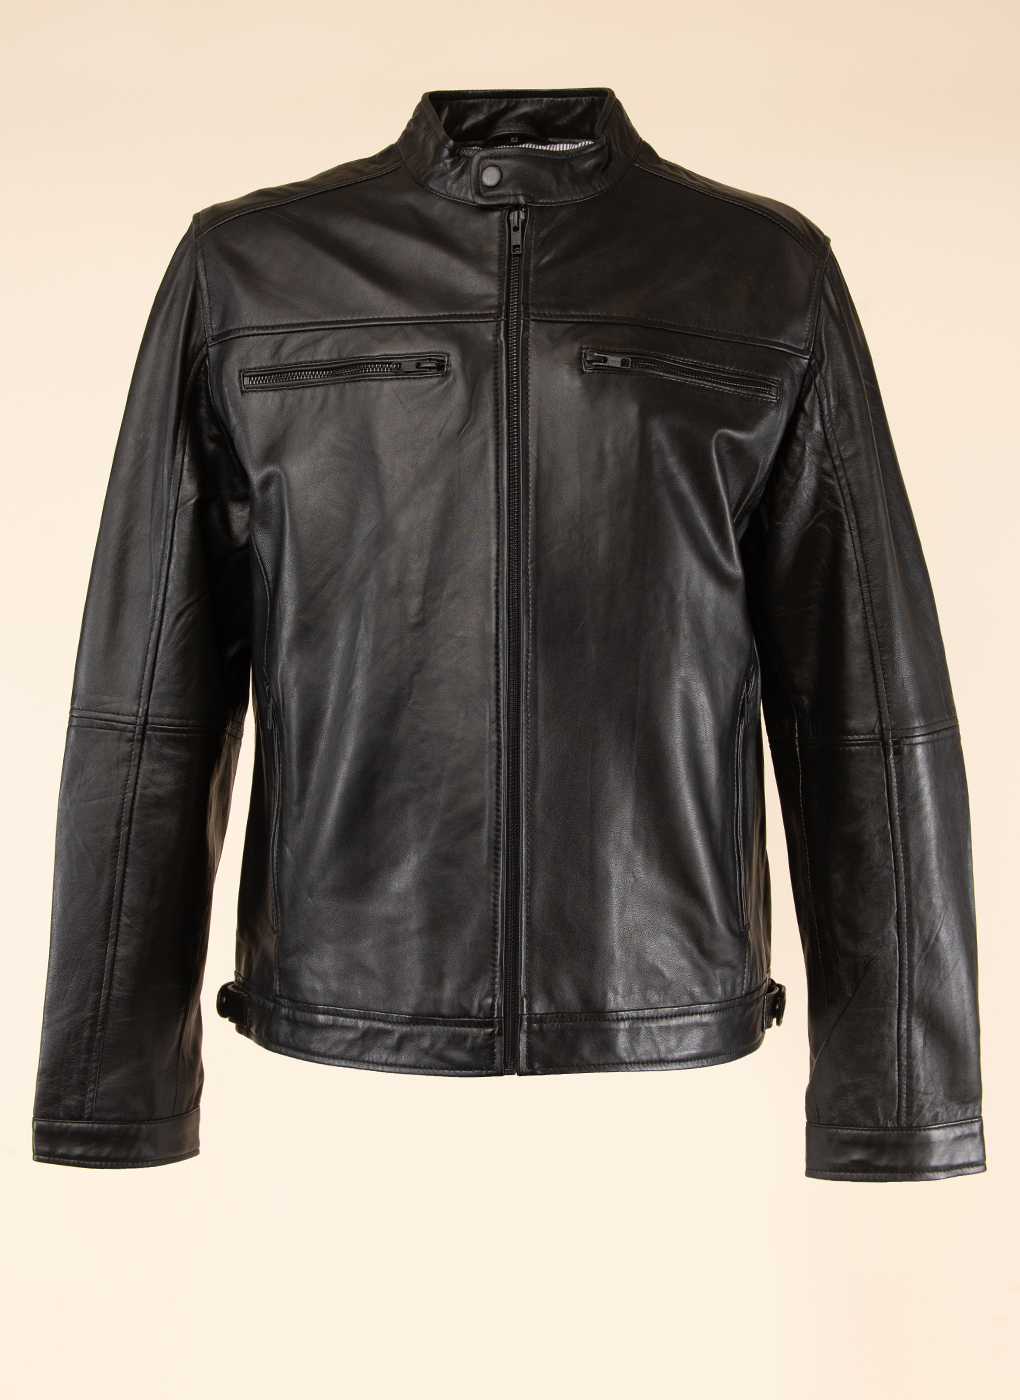 Кожаная куртка мужская Каляев 40630 черная 58 RU